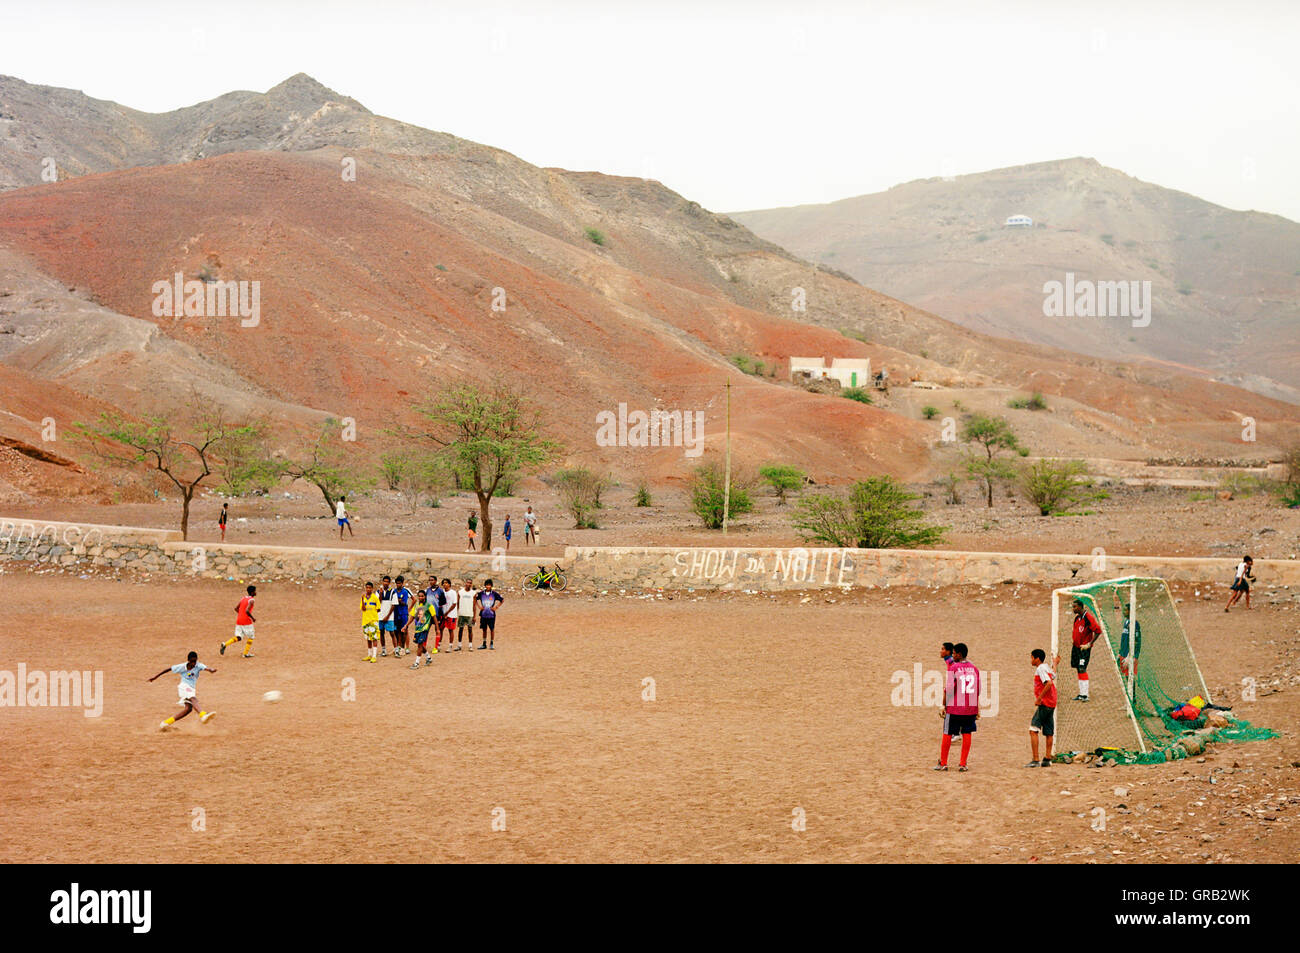 Kinder spielen Fußball auf der Insel Sao Vicente, Kap-Verde Inseln, Afrika. Stockfoto